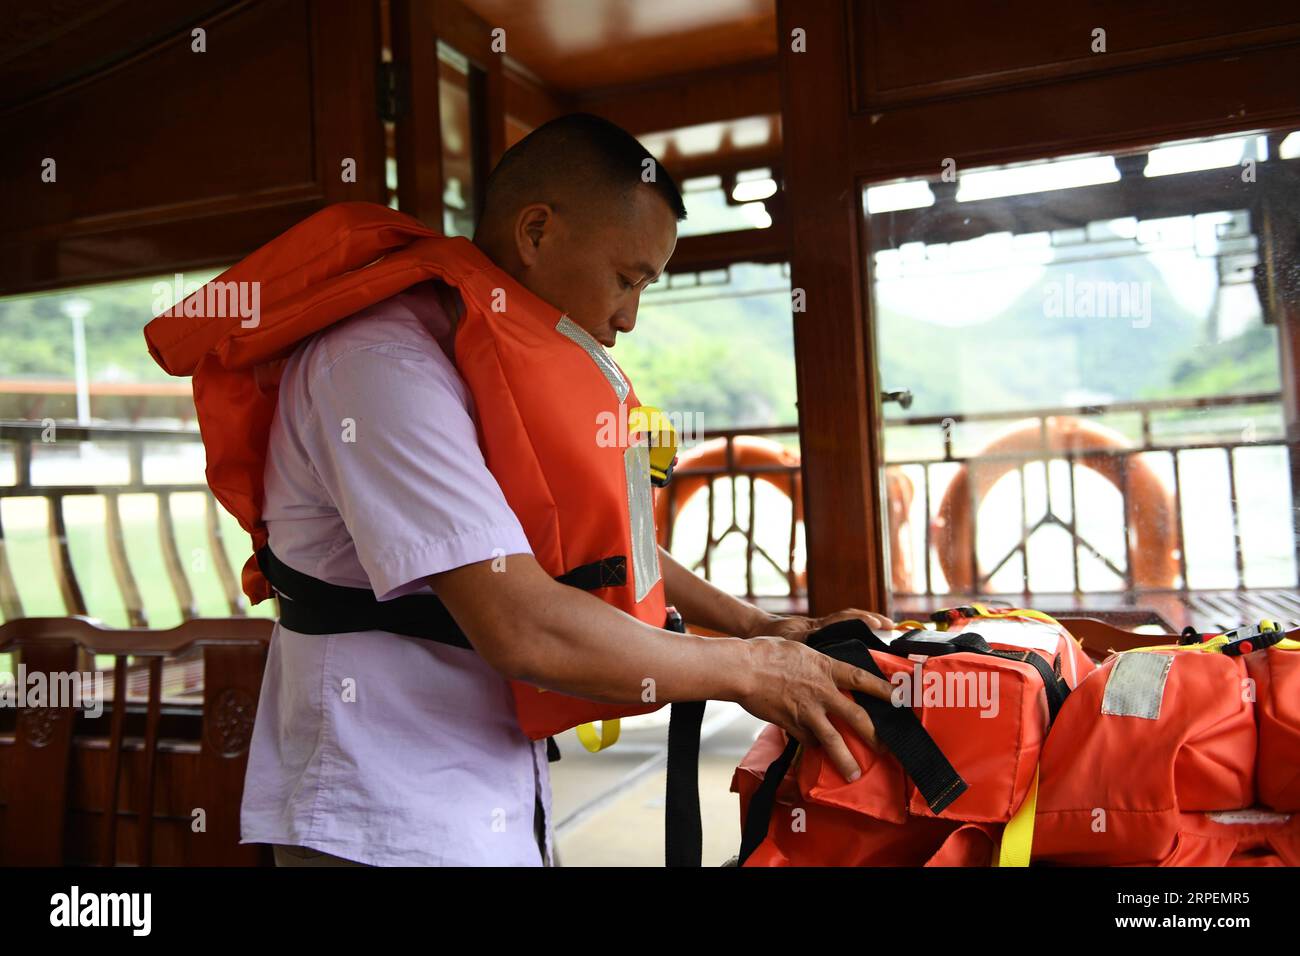 (190901) -- LINGYUN, 1 septembre 2019 -- Lao Ketuan arrange des gilets de sauvetage avant de conduire son bateau touristique sur le site pittoresque du lac Haokun dans le comté de Lingyun, dans la région autonome de Guangxi Zhuang du sud de la Chine, 30 août 2019. Lao Ketuan, 40 ans, vit dans le village montagneux de Haokun, un endroit où les transports sont extrêmement médiocres et où les ressources foncières sont rares, ce qui a sérieusement entravé le développement local et a plongé les gens dans la pauvreté. La famille AJO fait partie des ménages pauvres qui vivent ici. En 2016, Lao n’avait cependant jamais rêvé que sa famille puisse sortir de la pauvreté grâce à l’autho local Banque D'Images